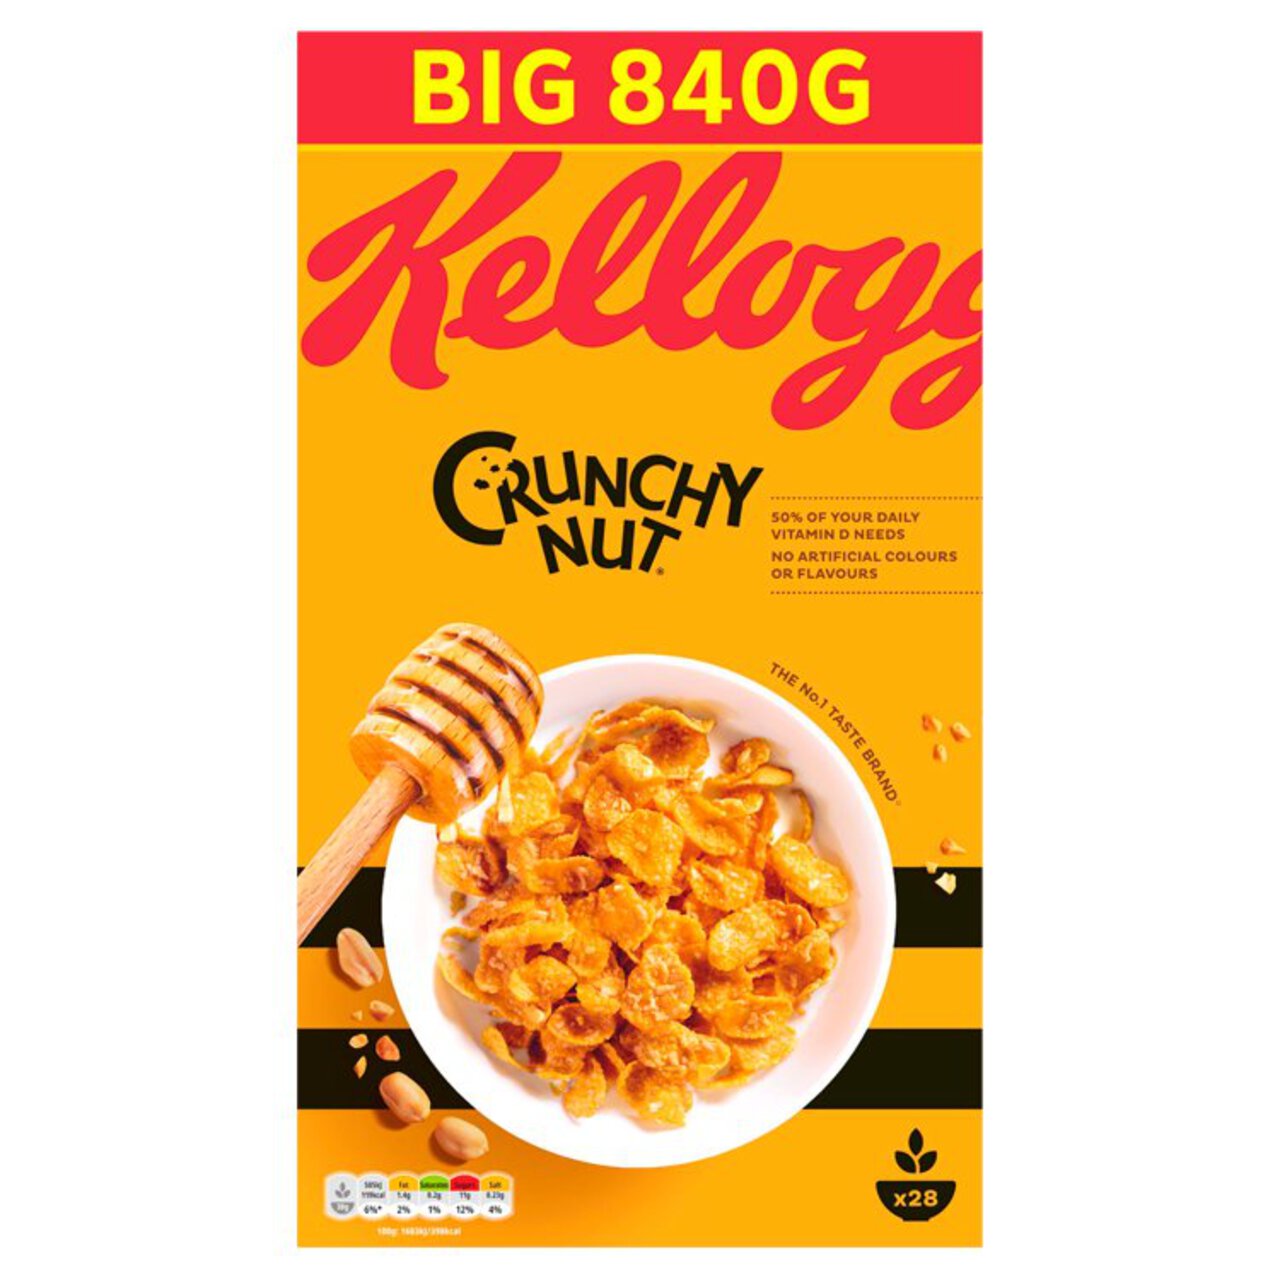 Kellogg's Crunchy Nut Breakfast Cereal 840g